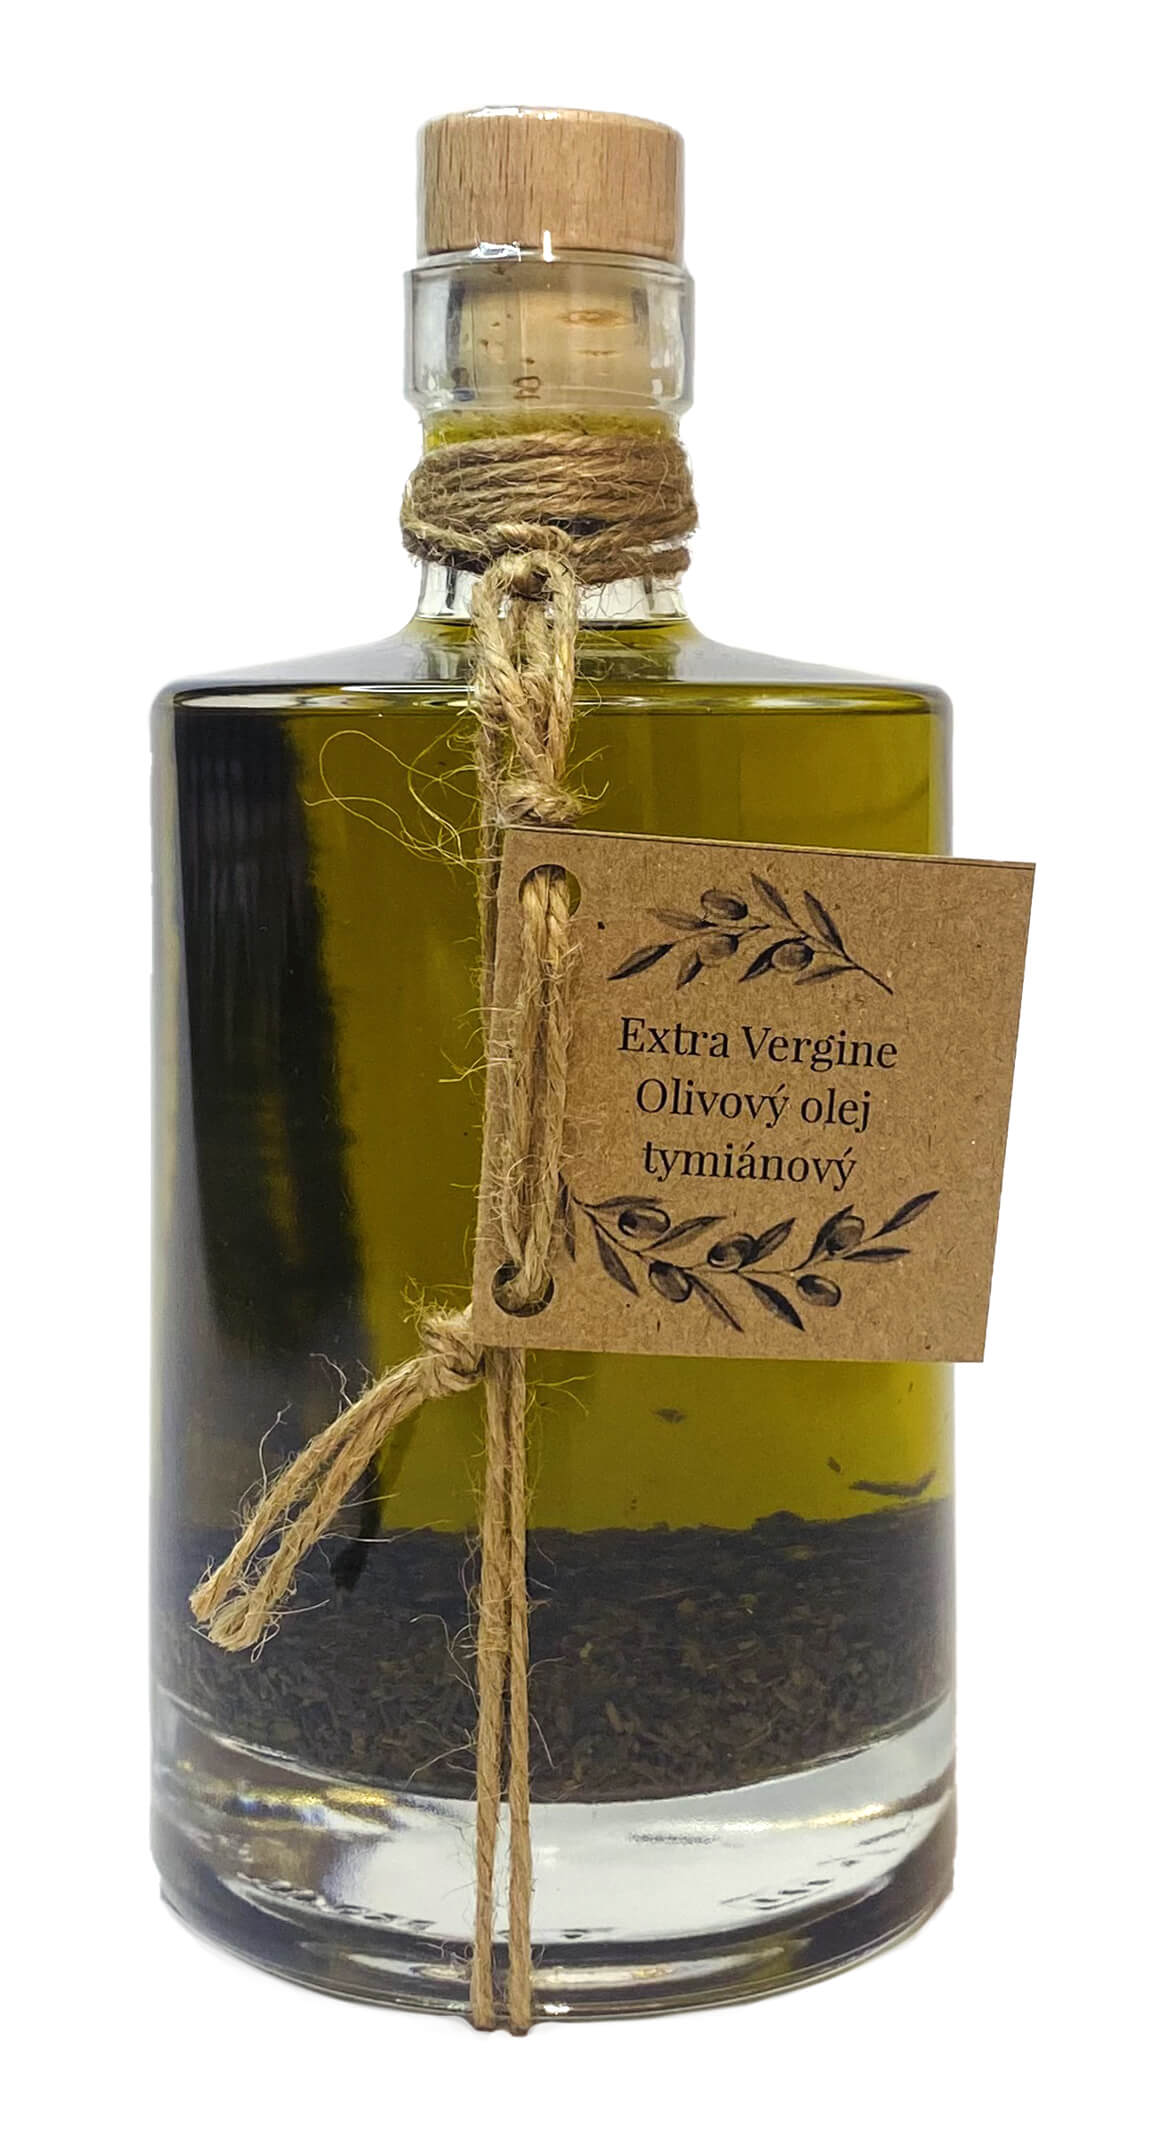 Zobrazit detail výrobku Nikoleta-Maria Extra Vergine olivový olej s tymiánem 500 ml + 2 měsíce na vrácení zboží